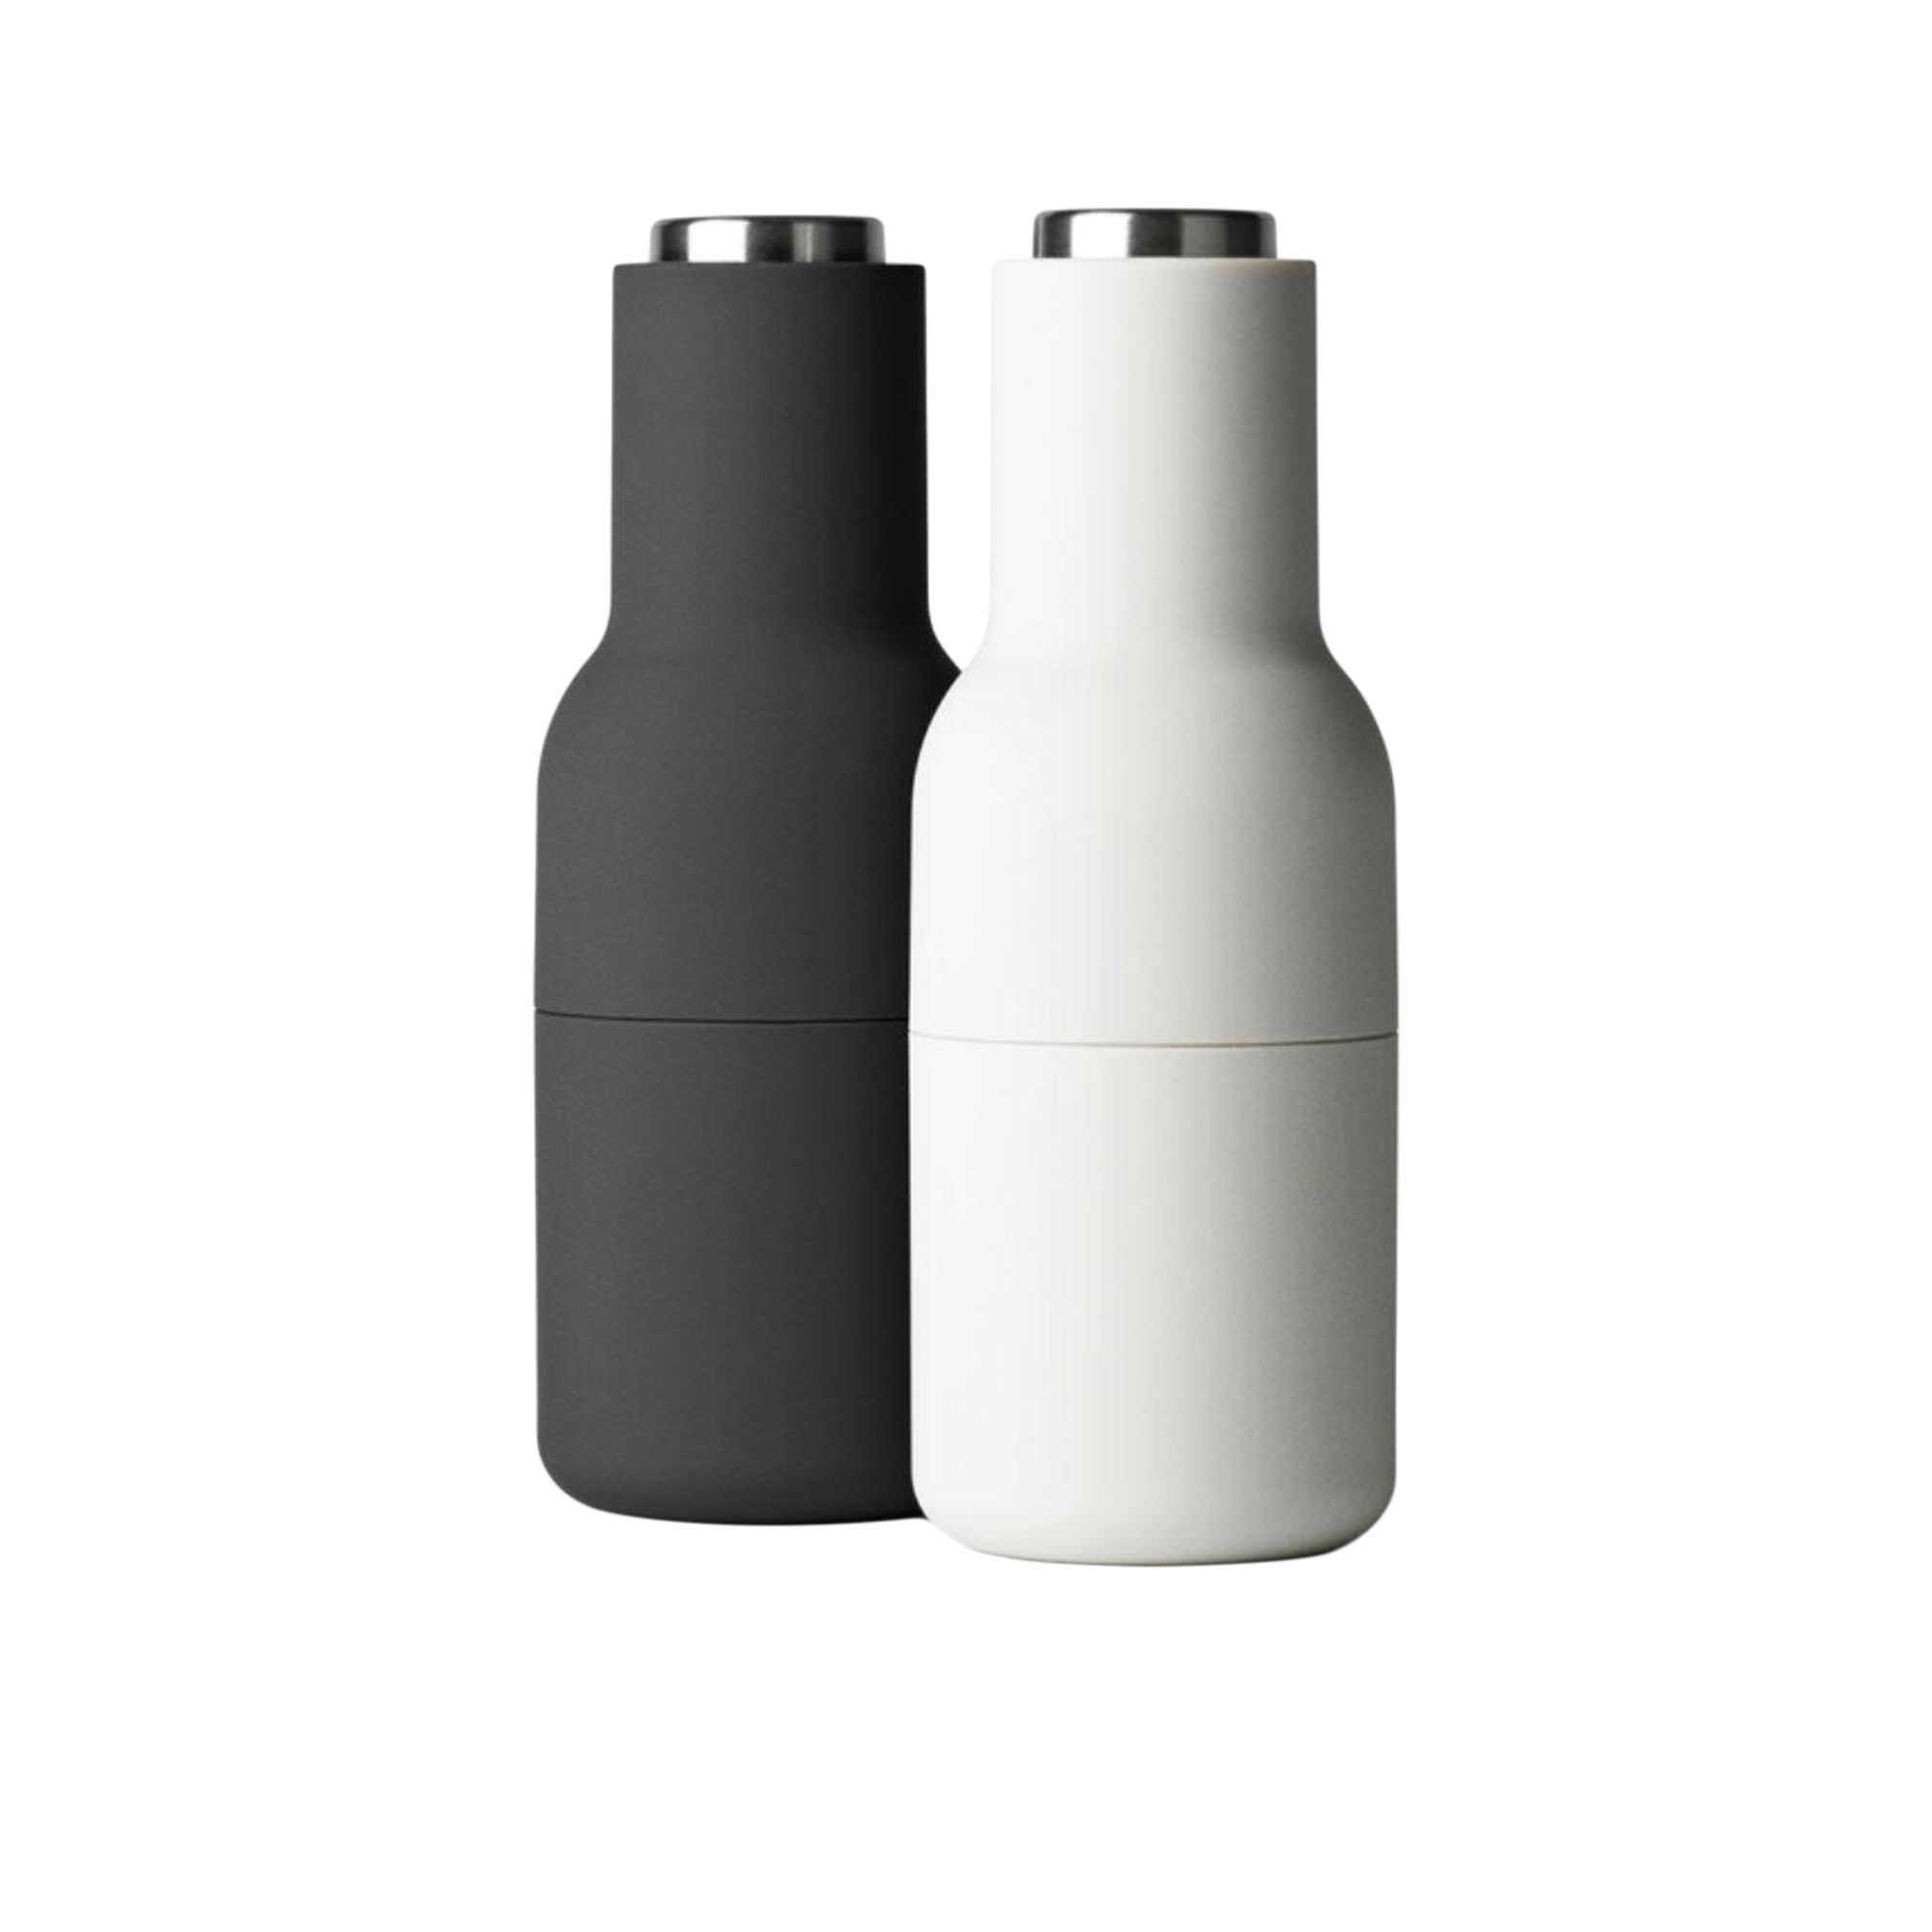 Menu Salt & Pepper Bottle Grinder with Steel Lid Set of 2 Ash Carbon Image 1